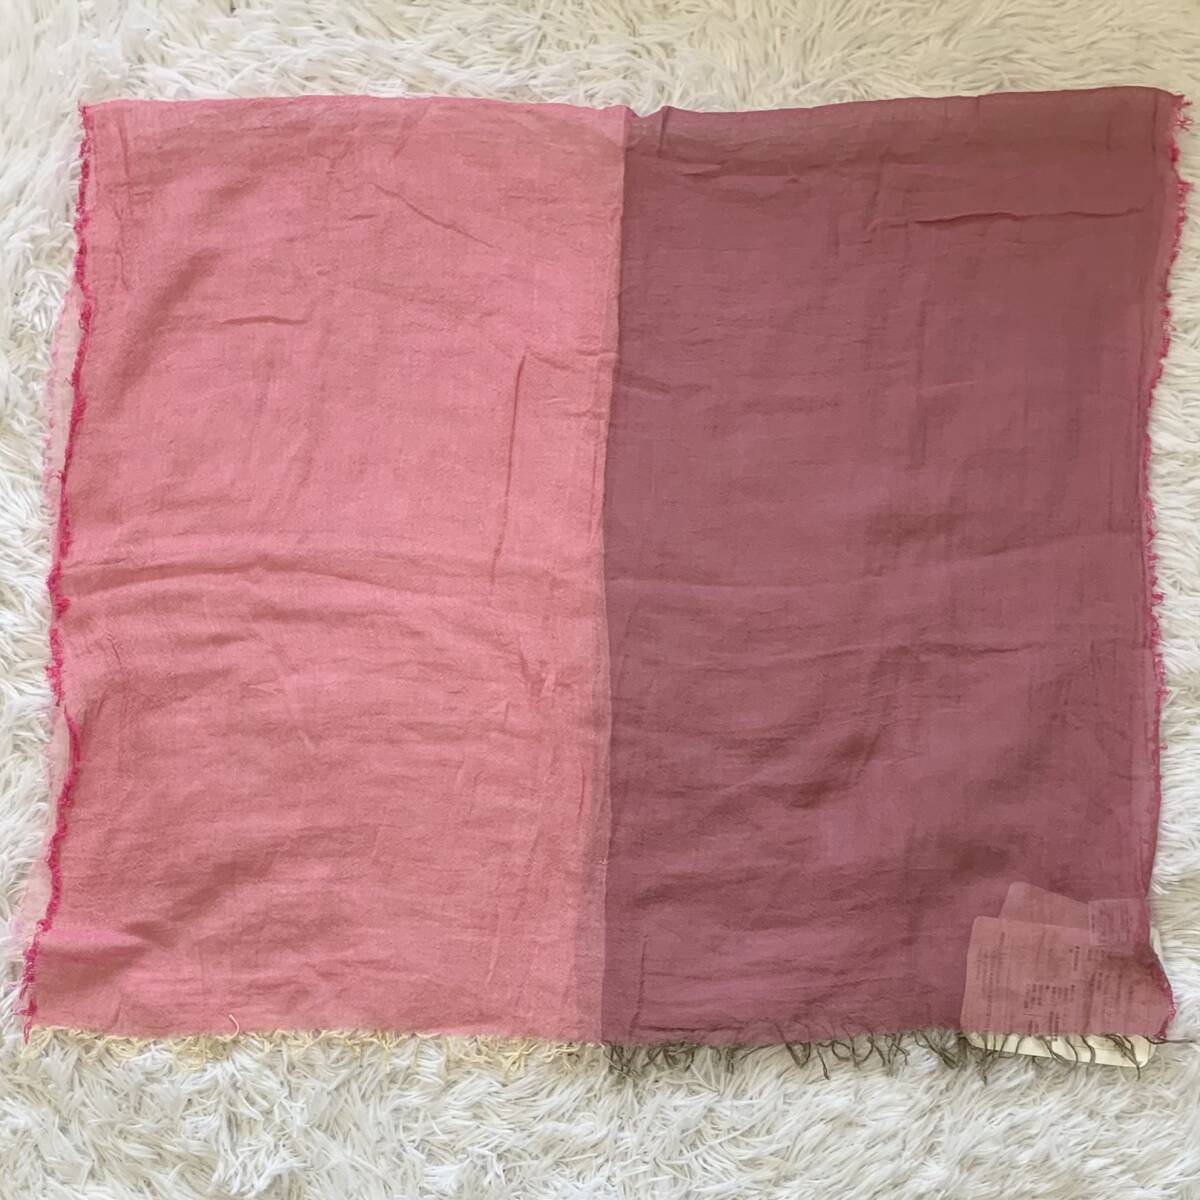 未使用 harukii はる希 ブロックチェック ガーゼ ストール 濃淡ピンク 4色 日本製 綿100% 75cm×130cm Sサイズ 送料無料